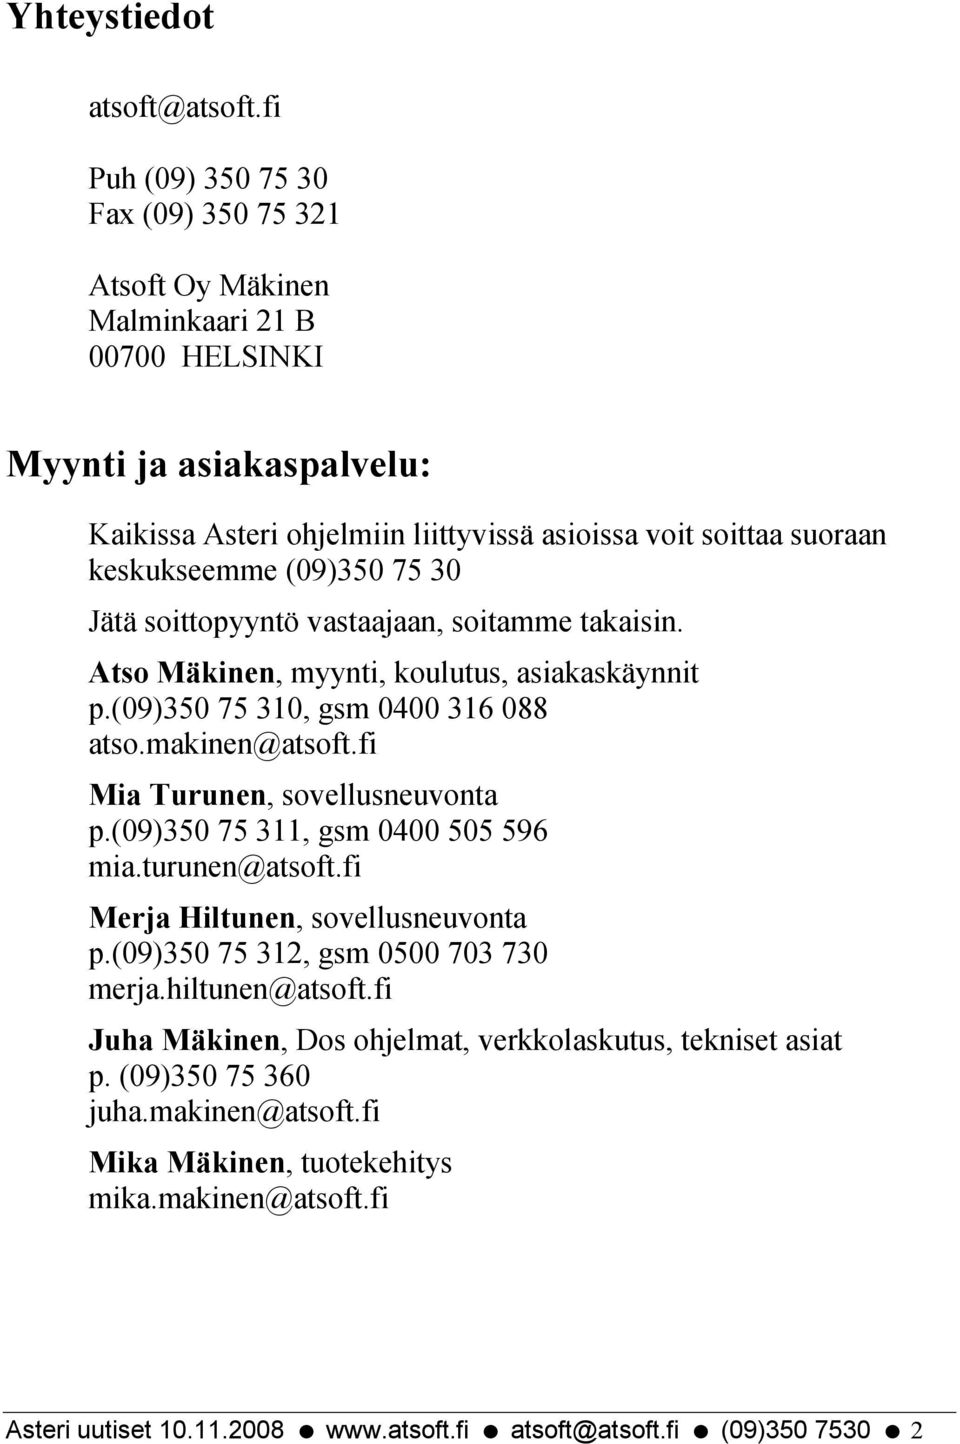 (09)350 75 30 Jätä soittopyyntö vastaajaan, soitamme takaisin. Atso Mäkinen, myynti, koulutus, asiakaskäynnit p.(09)350 75 310, gsm 0400 316 088 atso.makinen@atsoft.